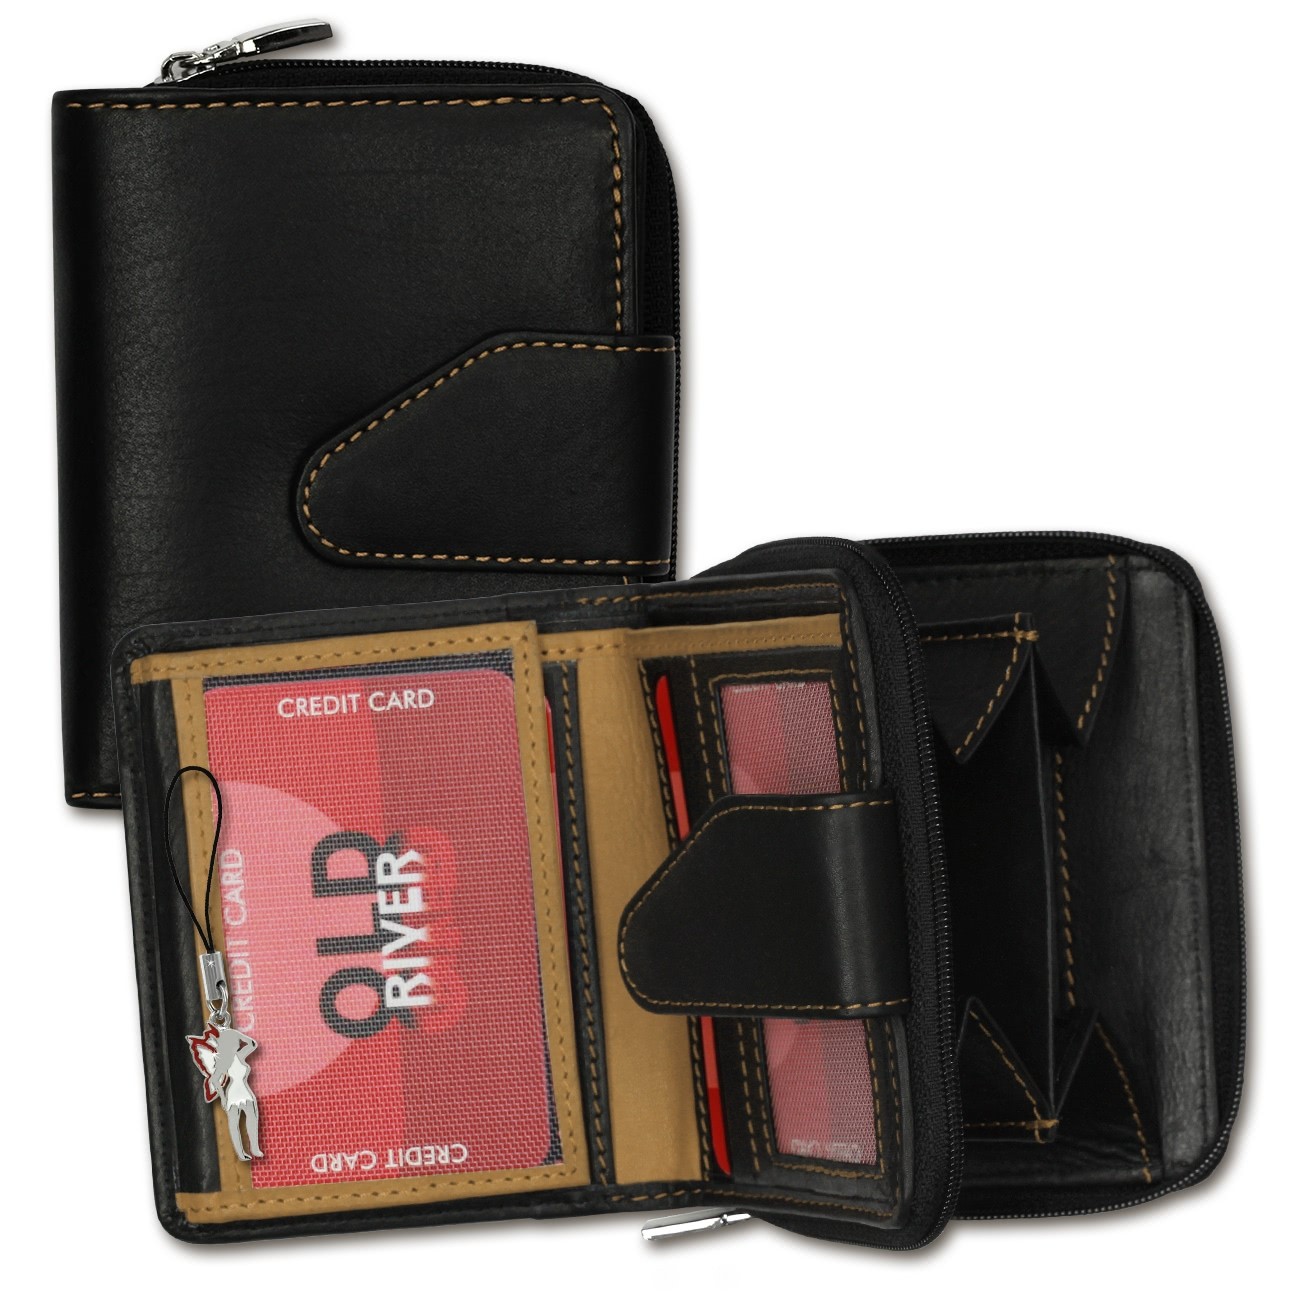 Old River Geldbörse Leder schwarz Portemonnaie Brieftasche RFID Schutz OPD104N